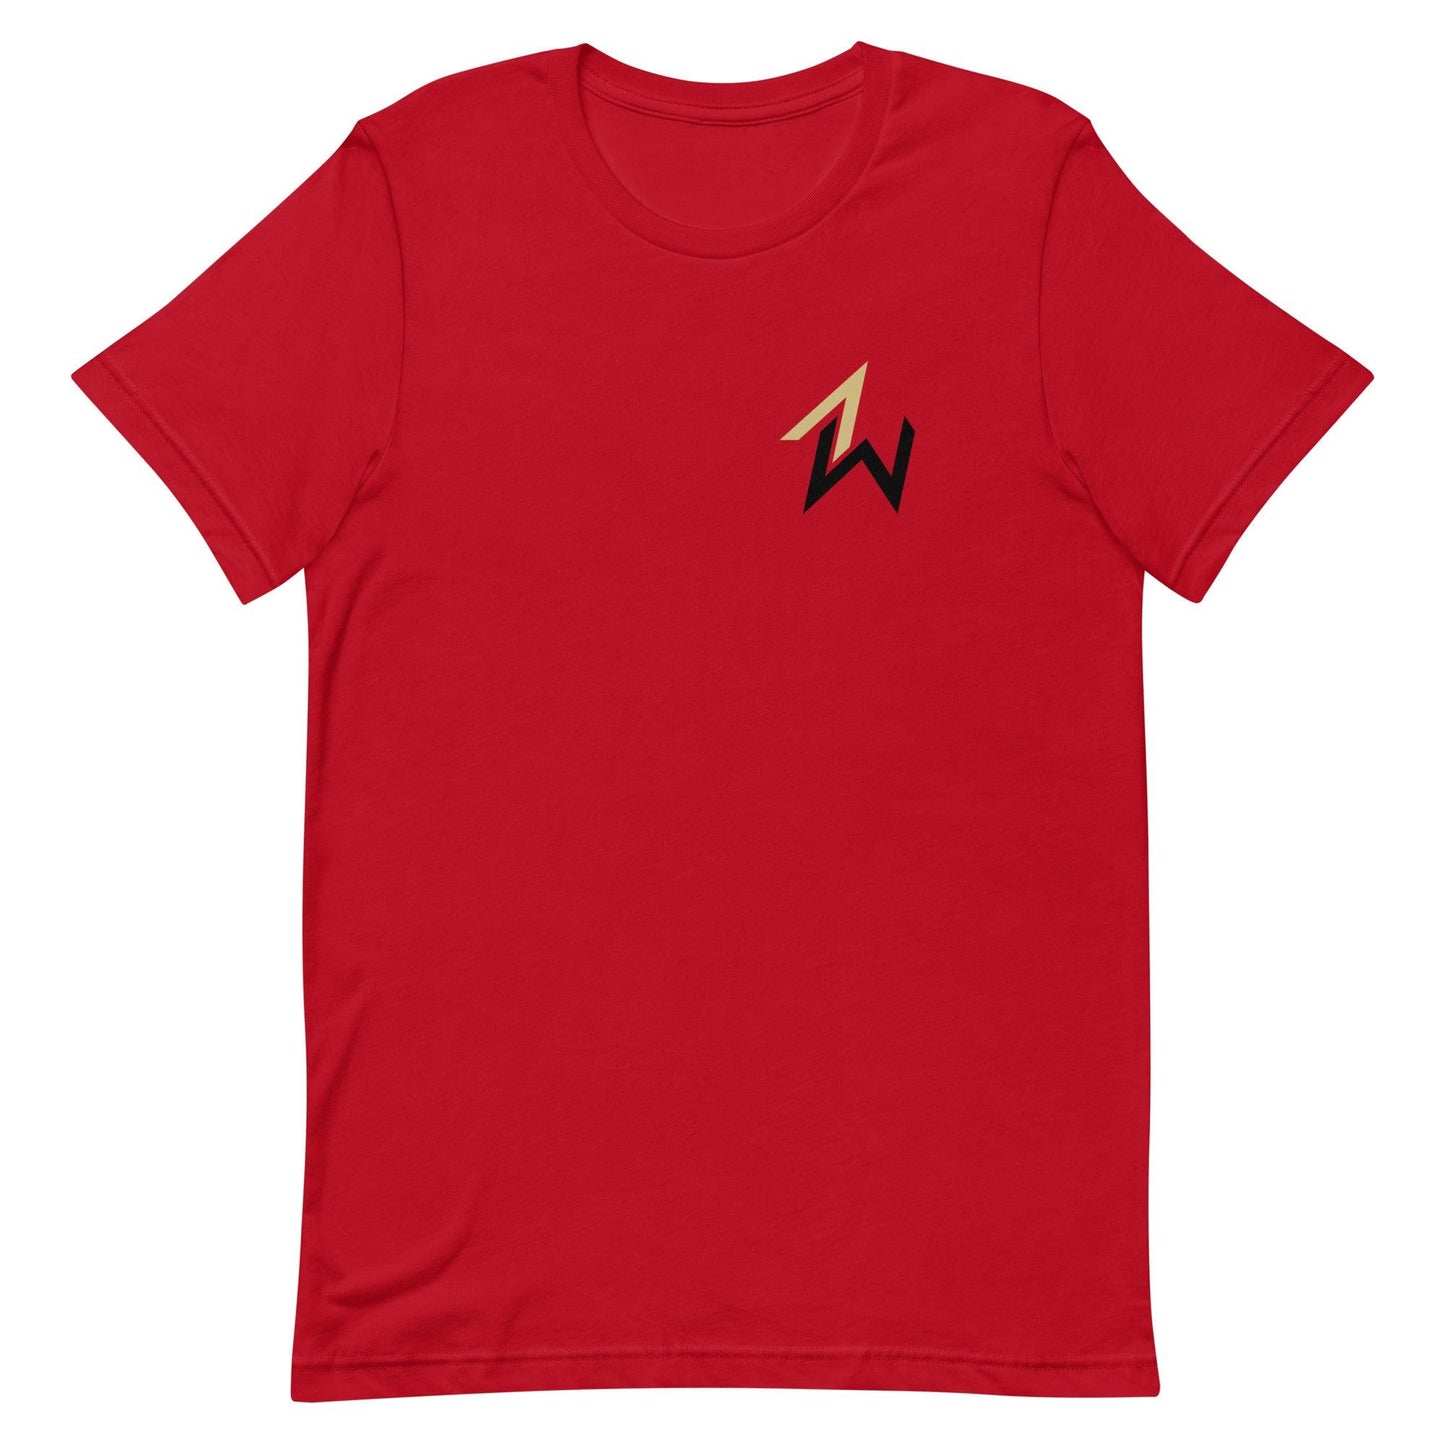 Austin Williams "Essential" t-shirt - Fan Arch